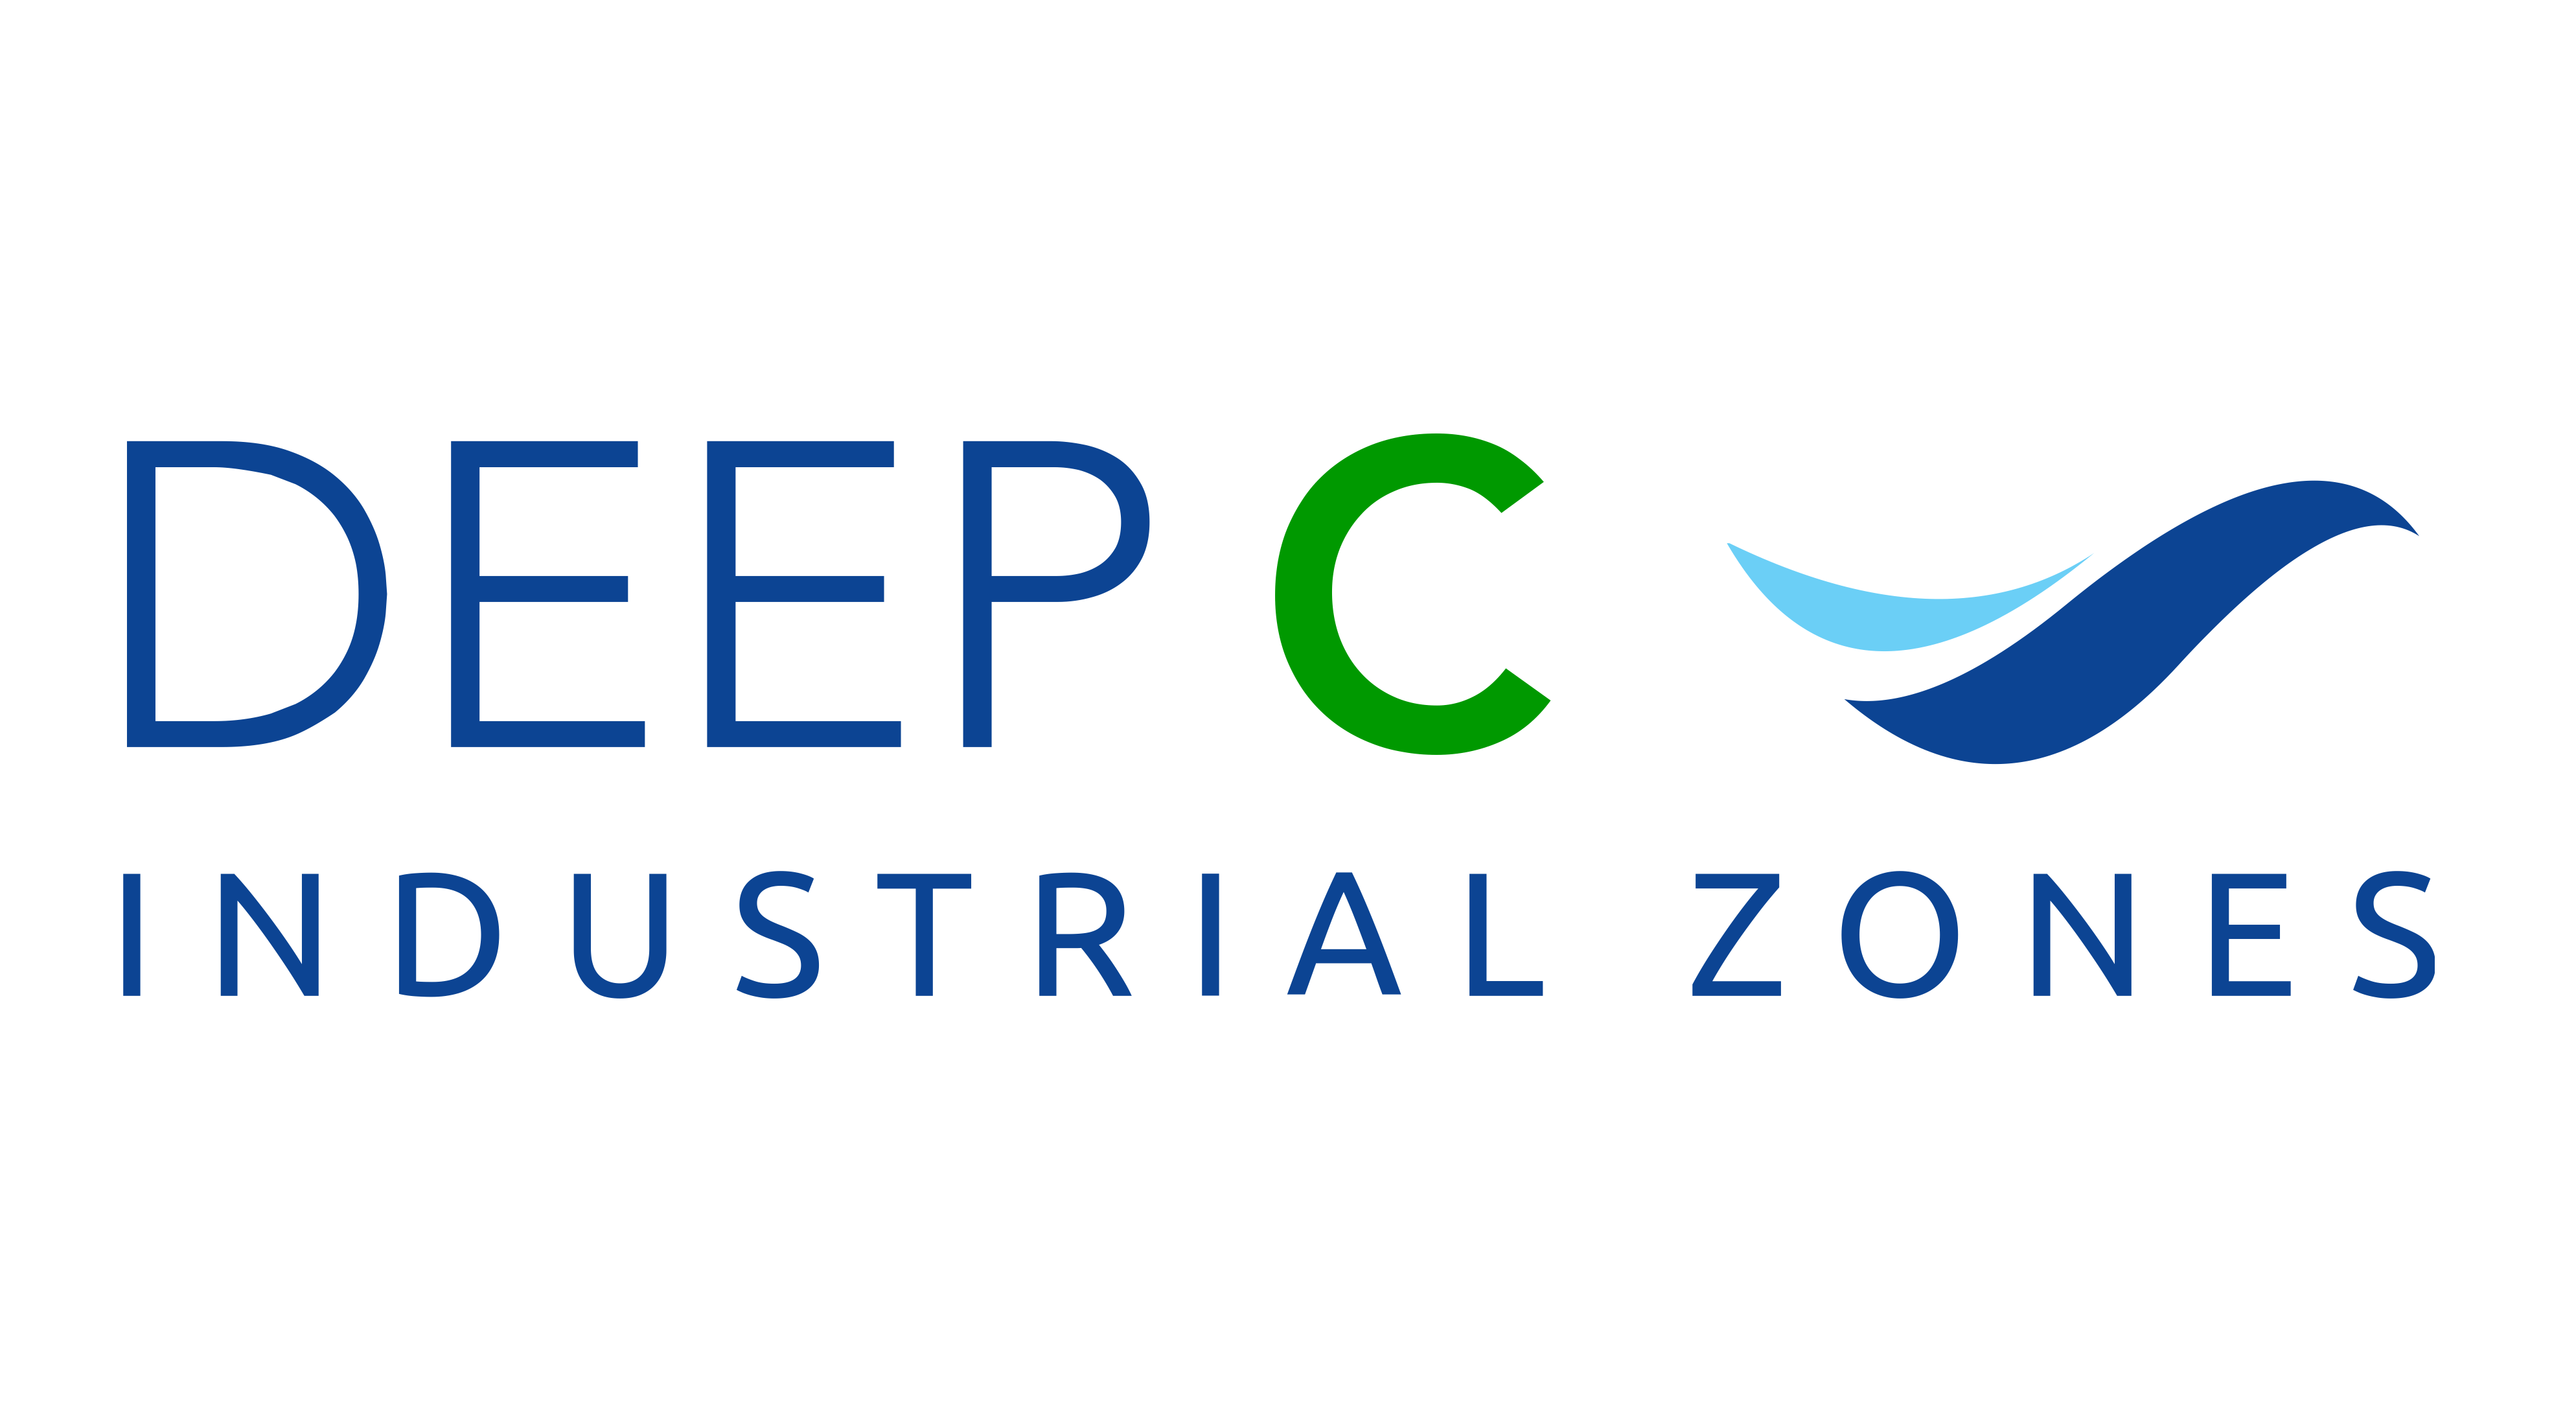 DEEP C Industrial Zones